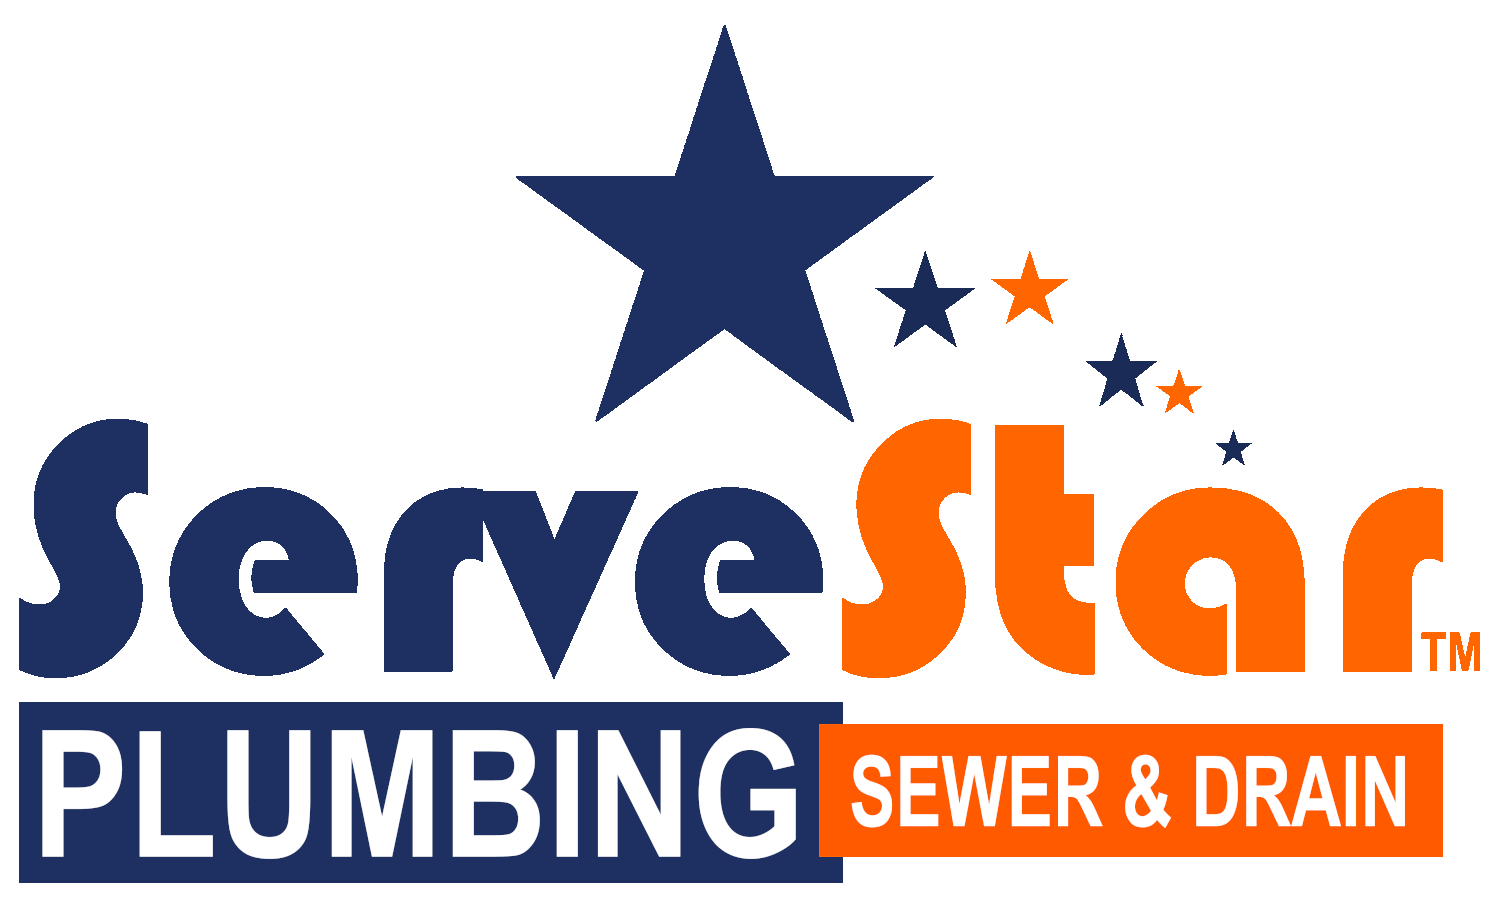 Home servestar plumbing. Plumber clipart maintenance supervisor